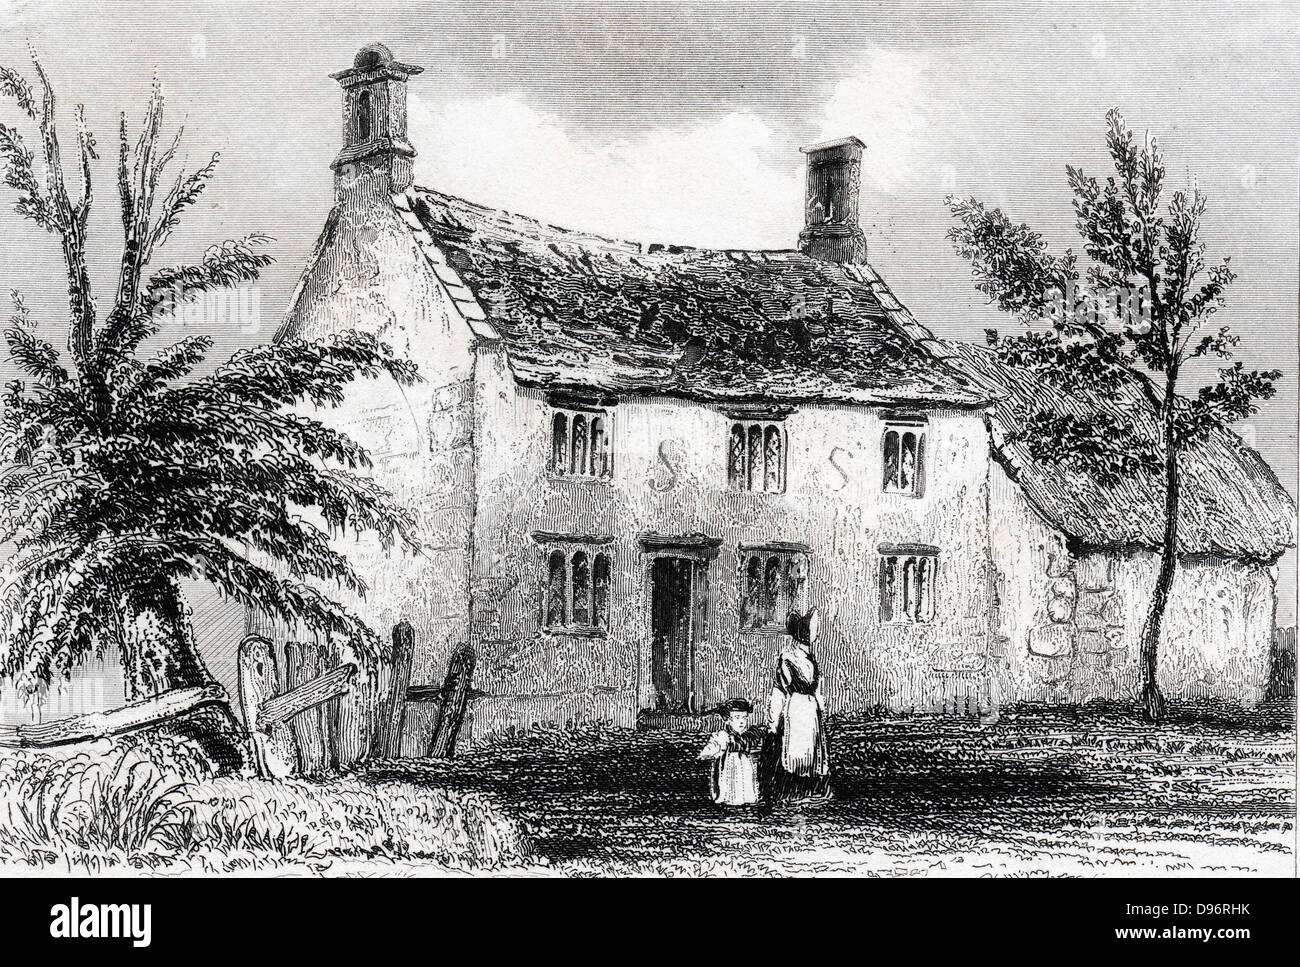 Woolsthorpe Manor, in der Nähe von Grantham, Lincolnshire, Geburtsort von Isaac Newton (1642-1727). Gravur von Dugdale 'England und Wales abgegrenzt' 1840. Stockfoto